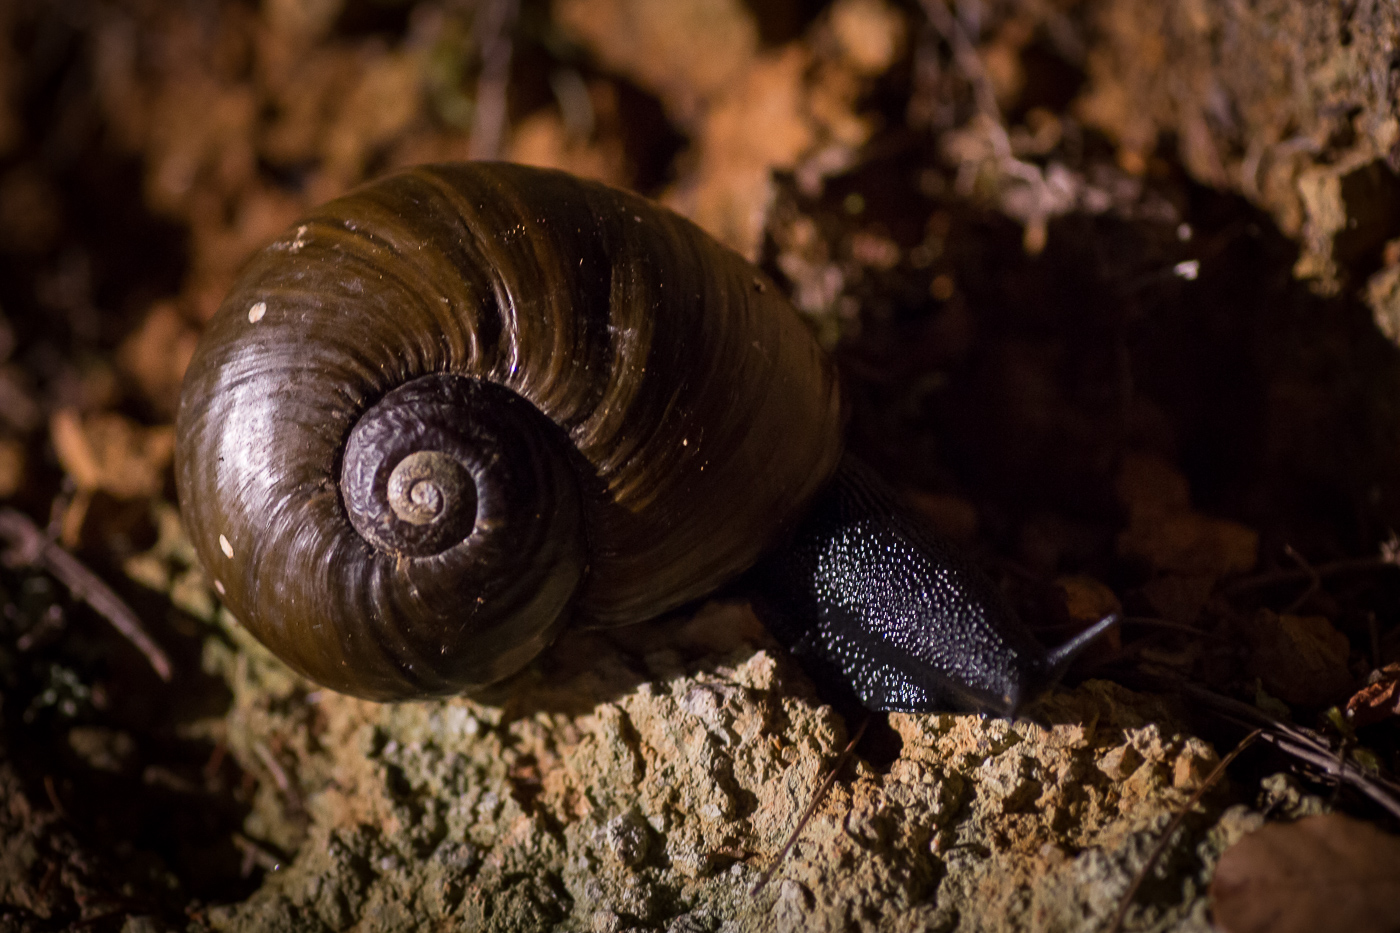 A kauri snail